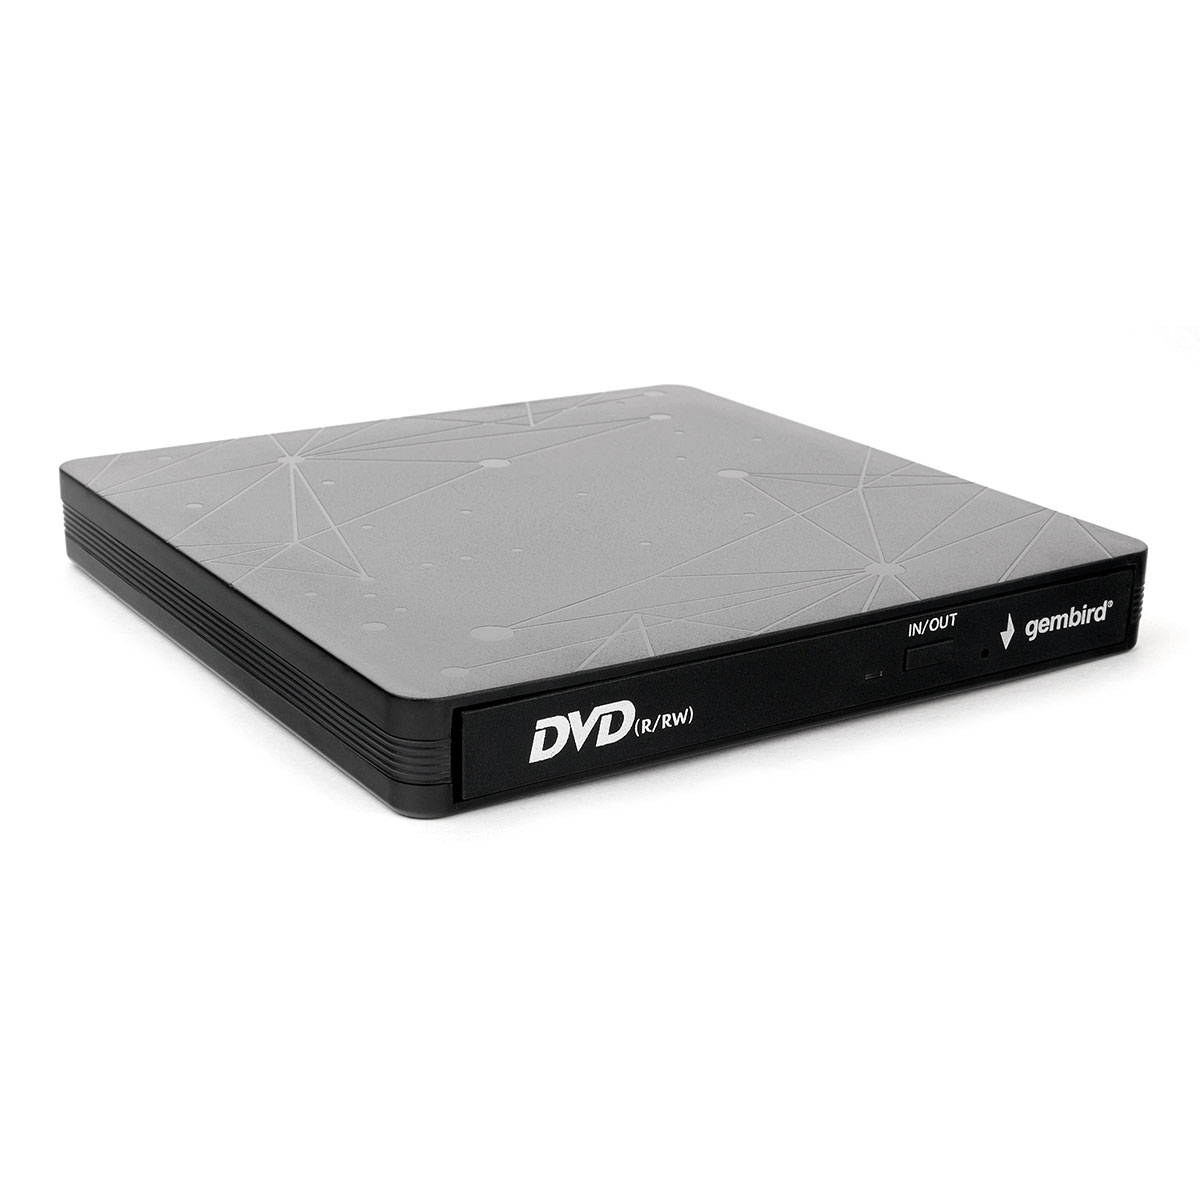  DVD+/-RW Gembird DVD-USB-03